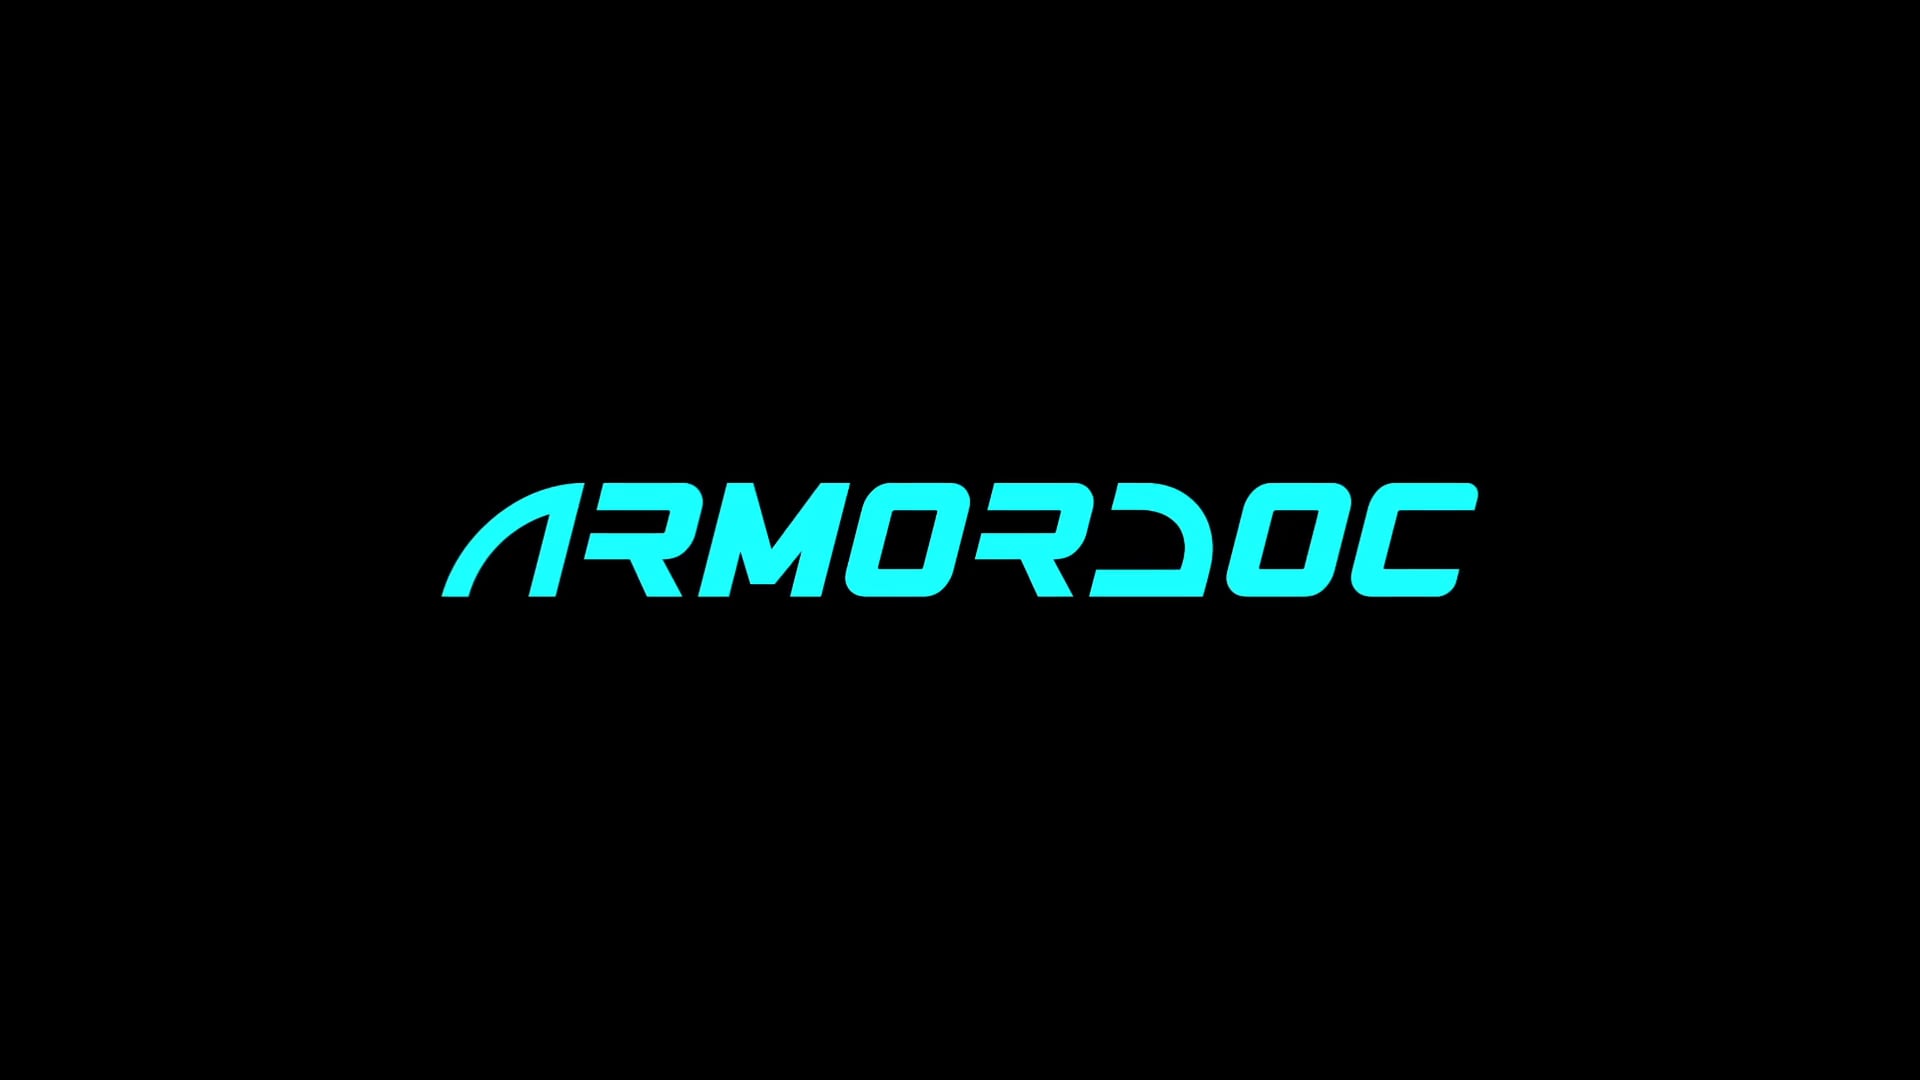 ArmorDoc Explainer Video